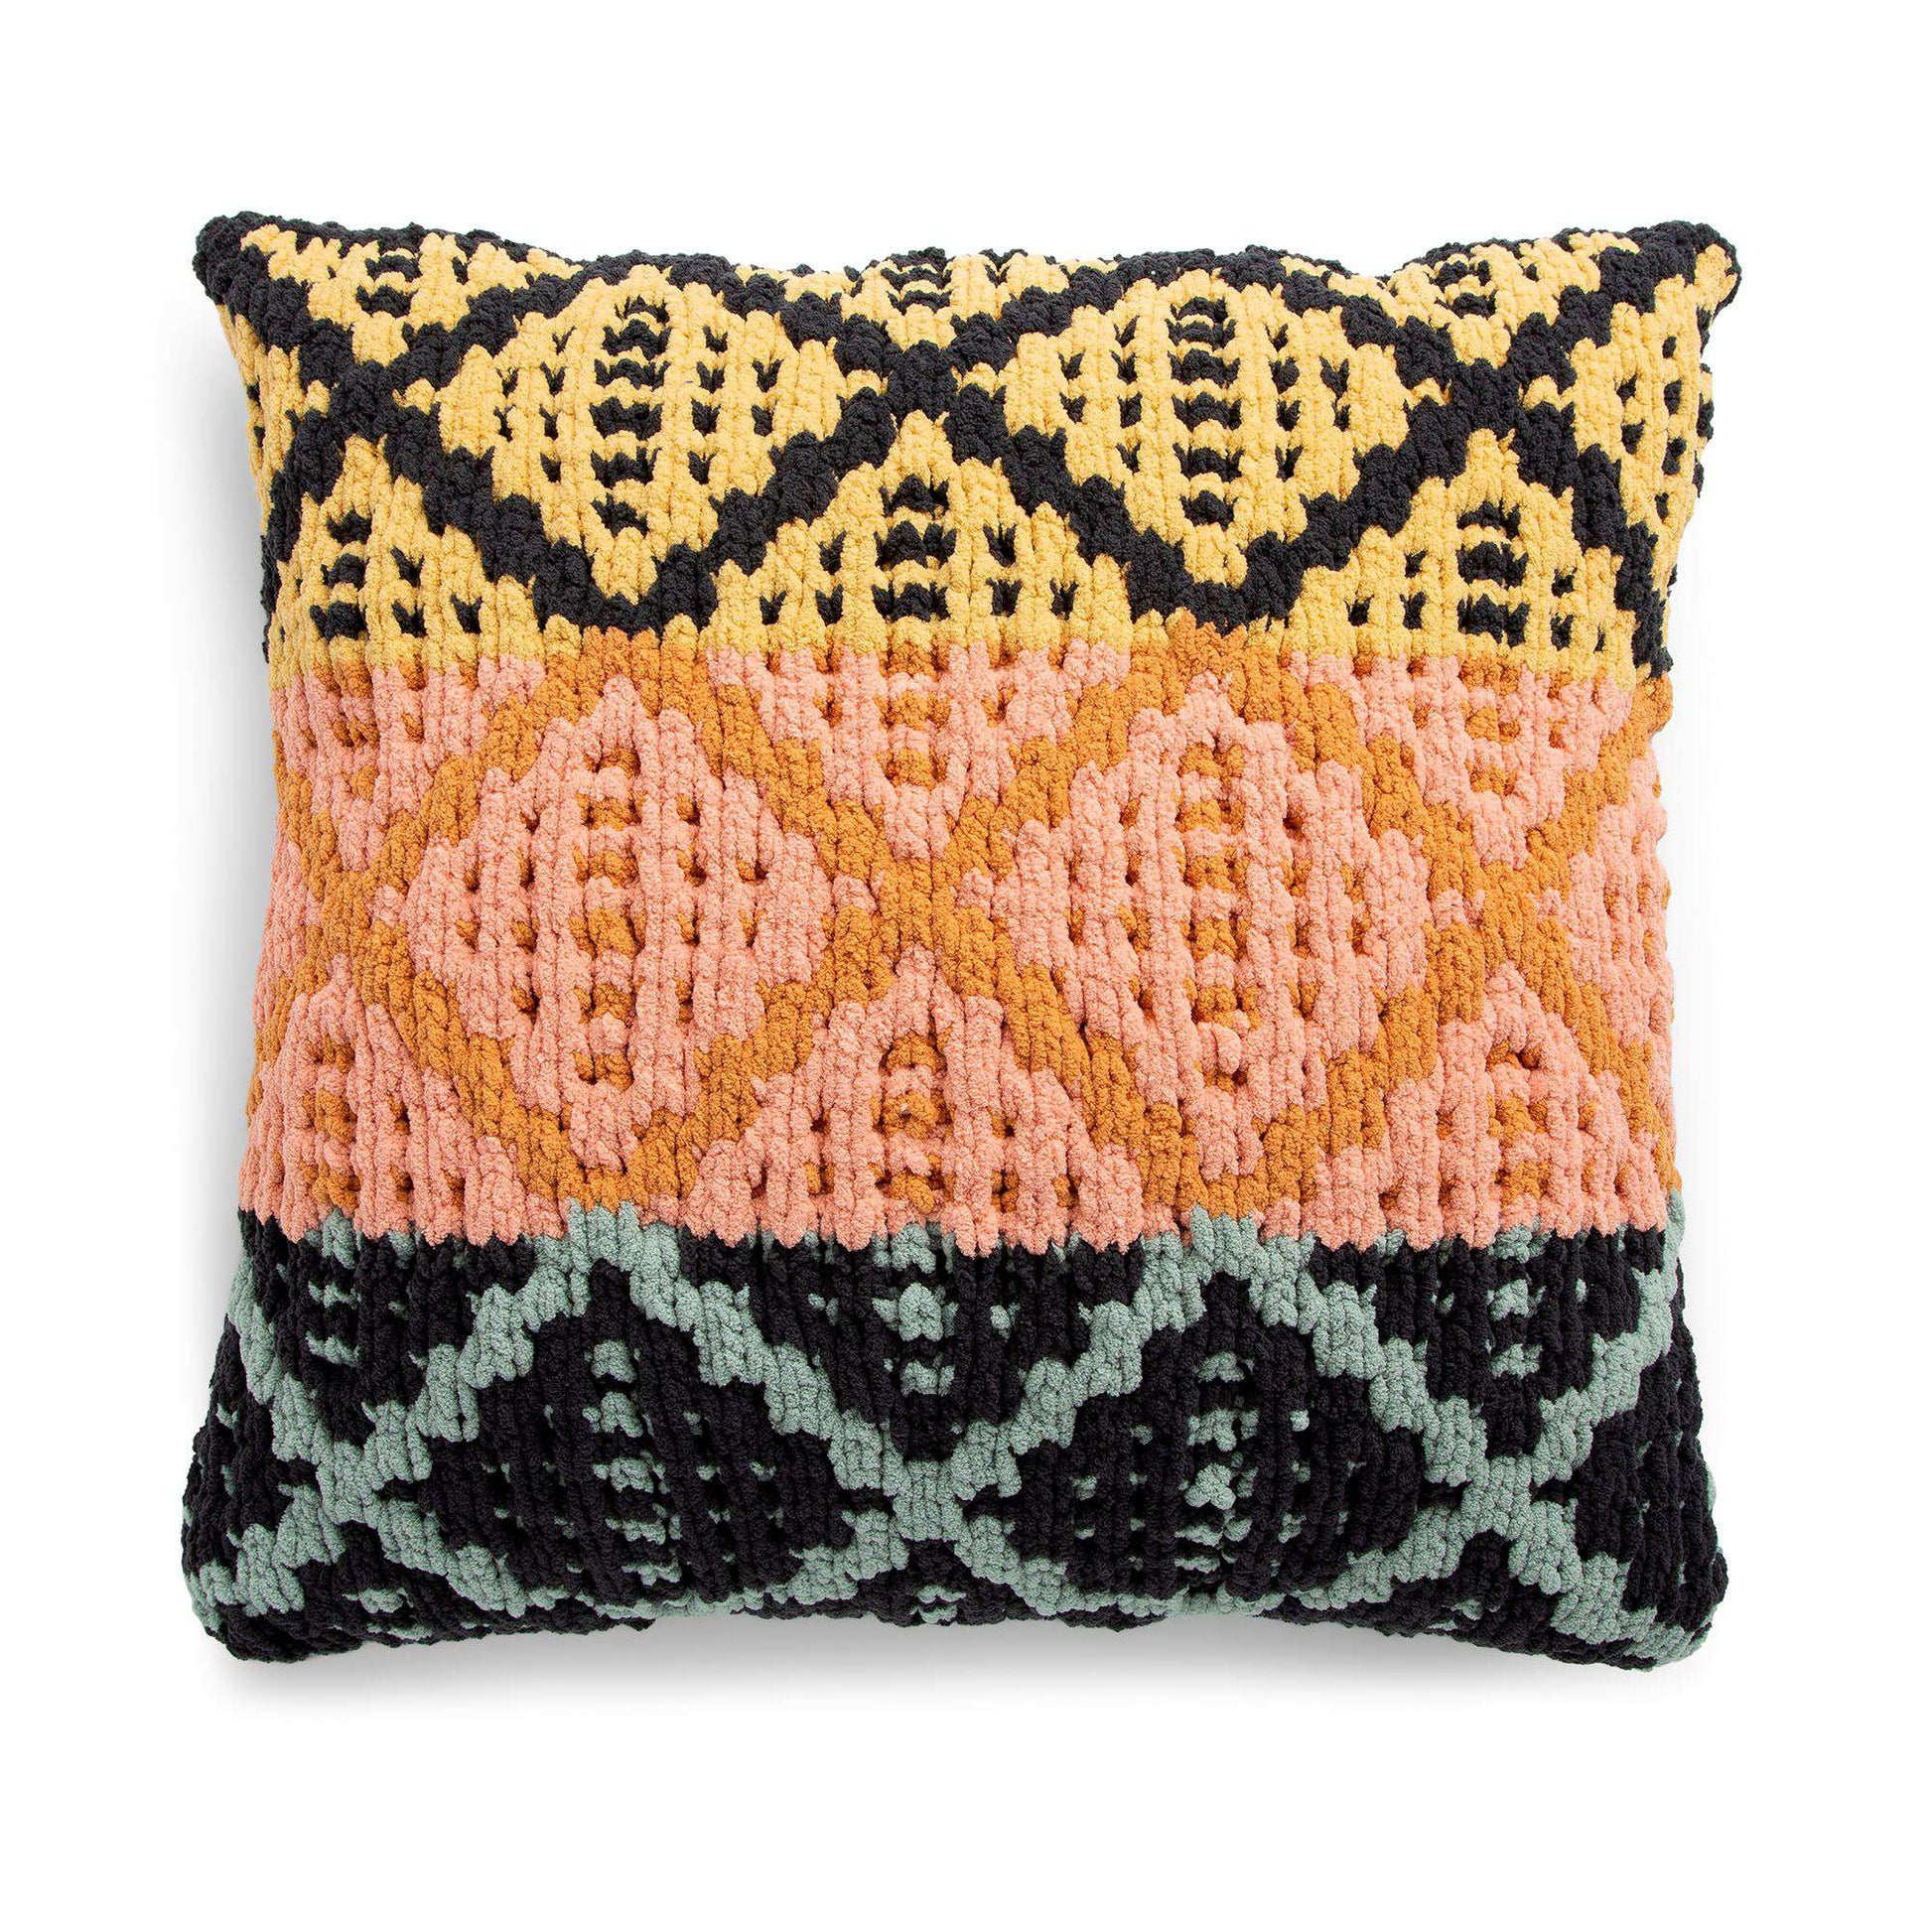 Free Bernat Geometric Mosaic Knit Pillow Pattern